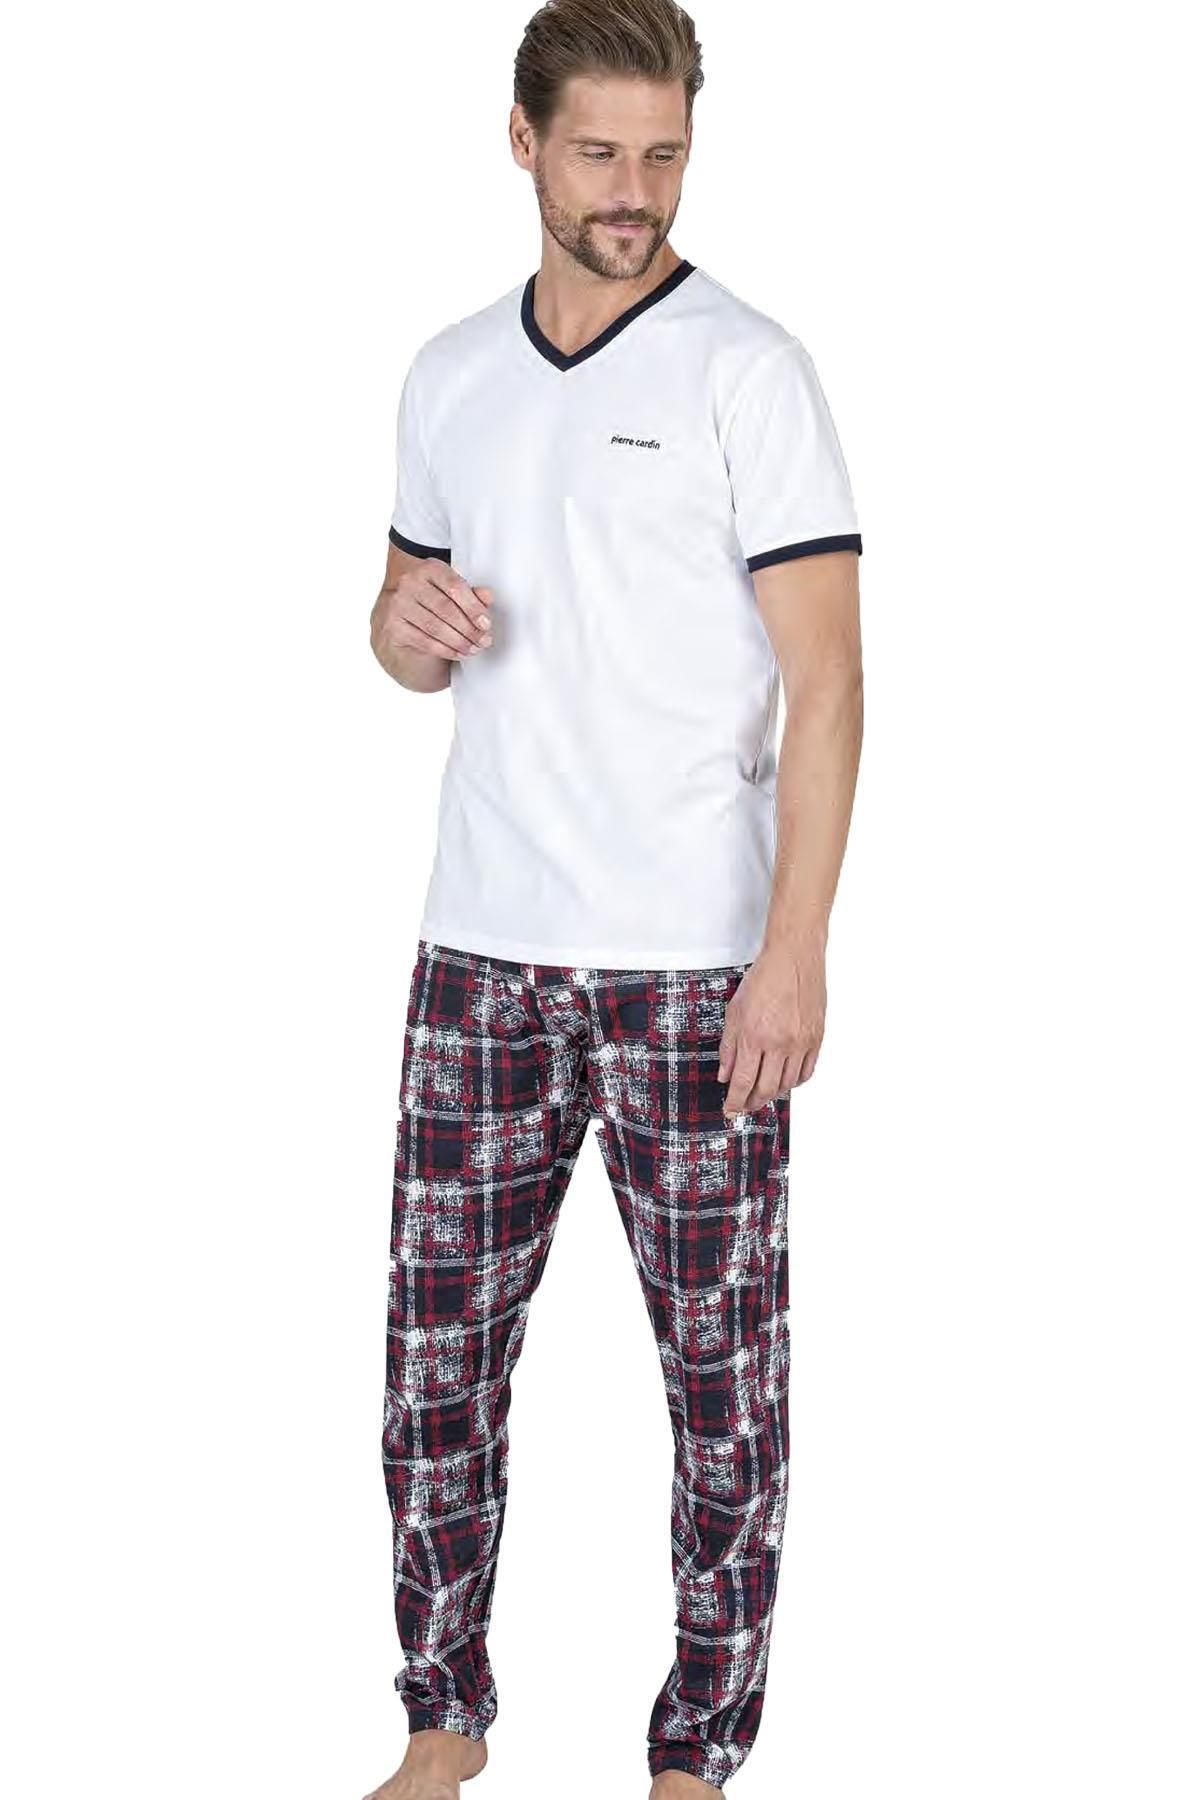 Pierre Cardin Erkek V Yaka Yazlık Pijama Takım, %100 Pamukludur